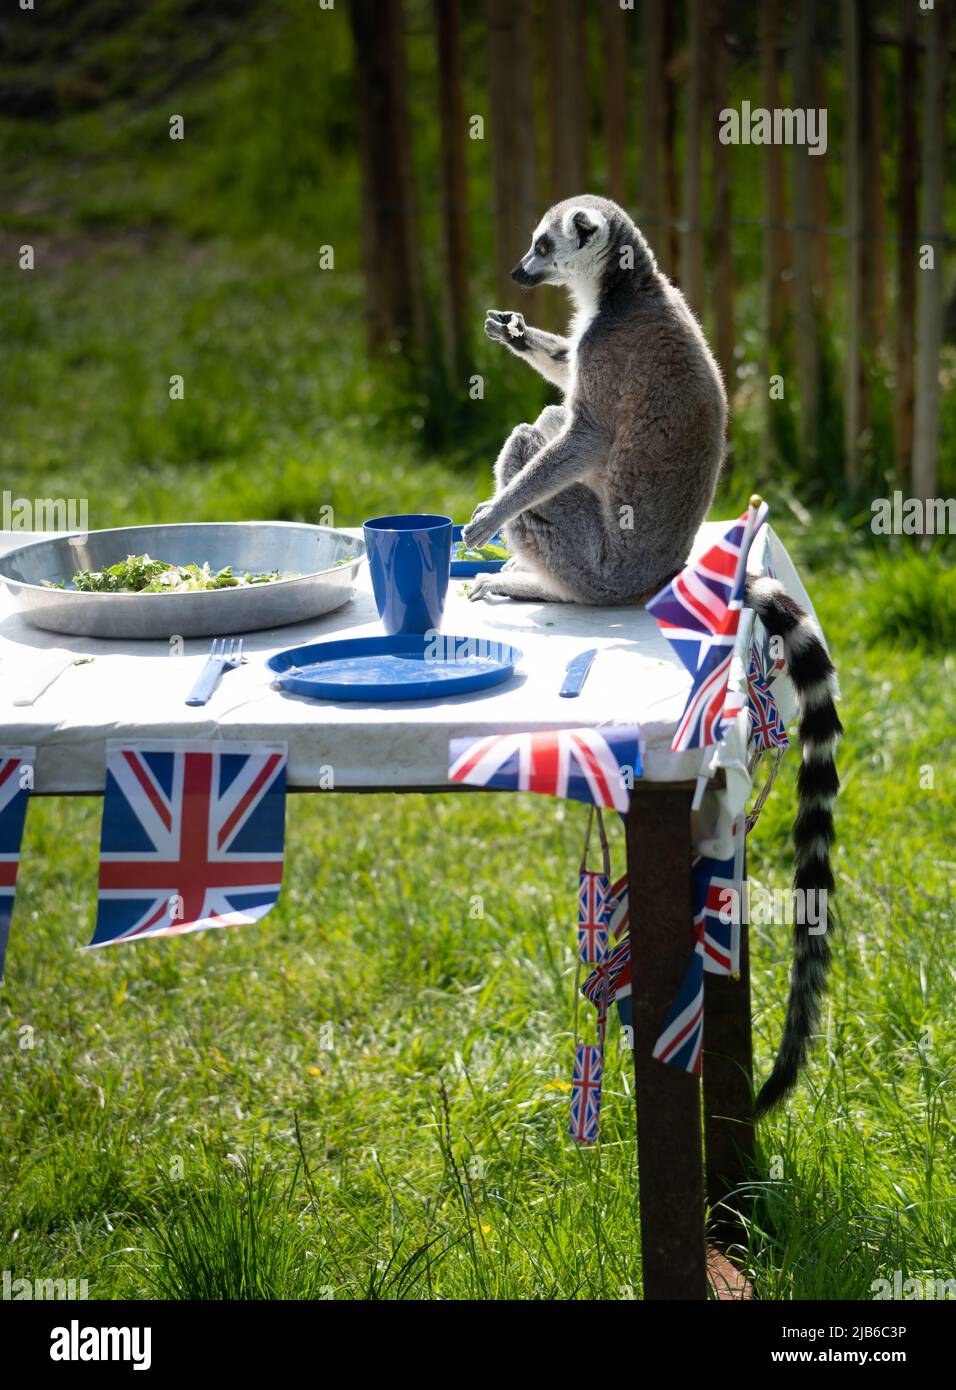 Un Lemur à queue ronde (Lemur catta) célèbre le Jubilé de platine de la reine Elizabeth II lors d'une fête de rue au Peak Wildlife Park, Staffordshire Banque D'Images